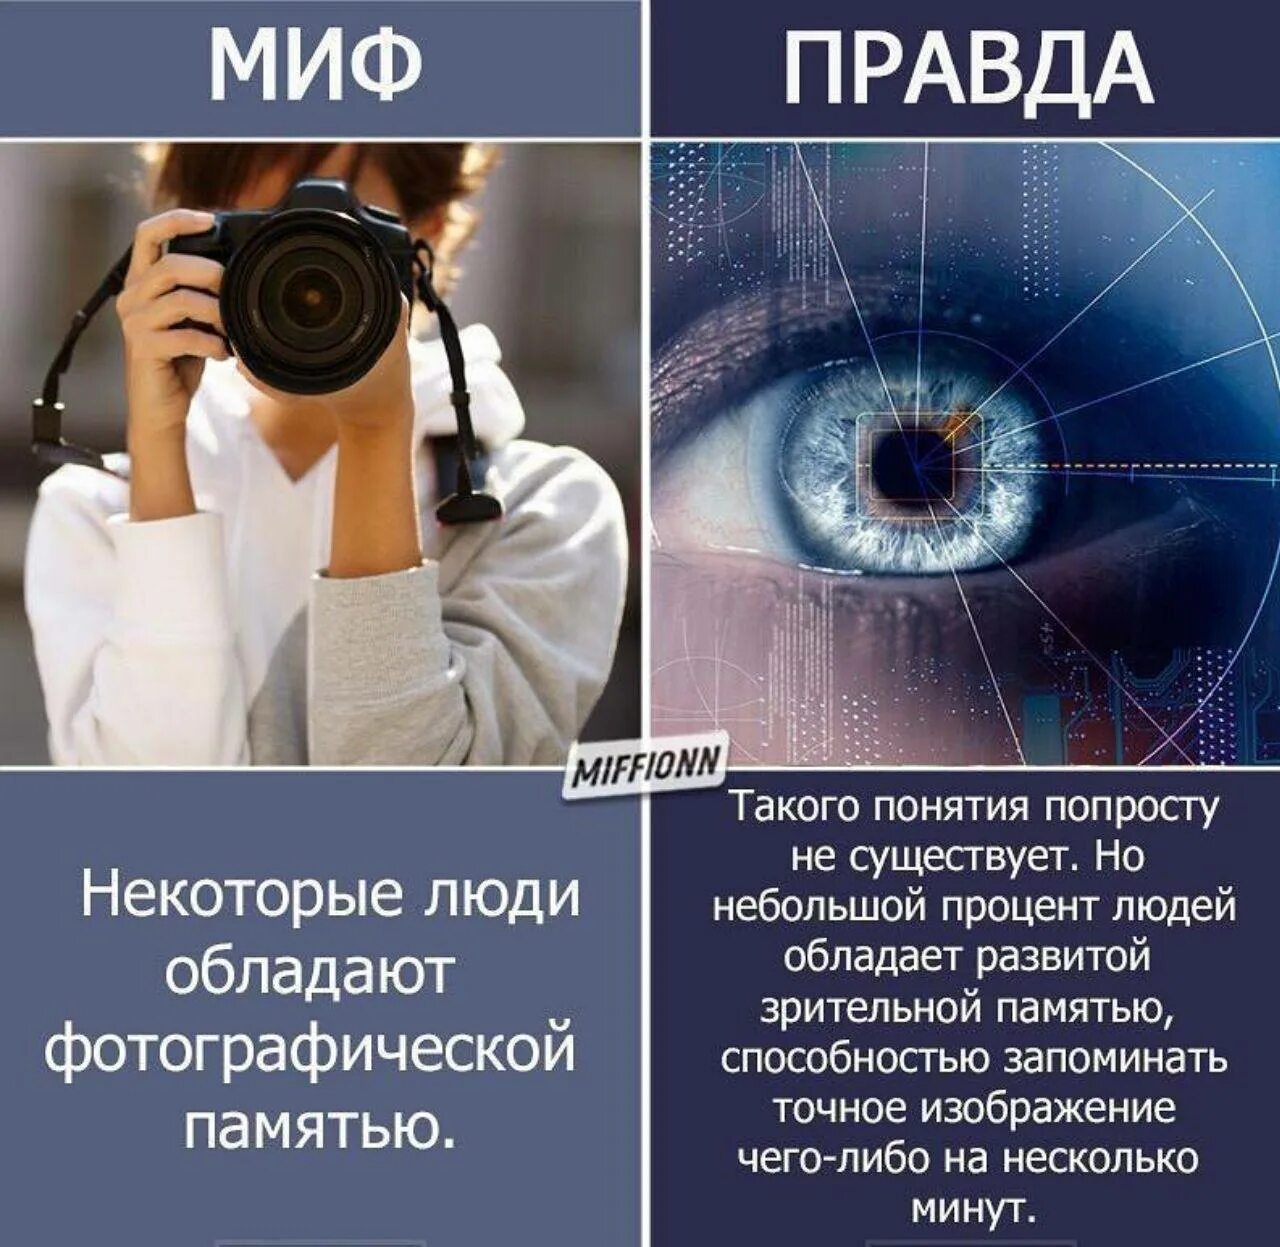 Люди с фотографической памятью. Фотографичная память. Фотографическая память миф. % Людей обладающих фотографической памятью. Человек с фотографической памятью